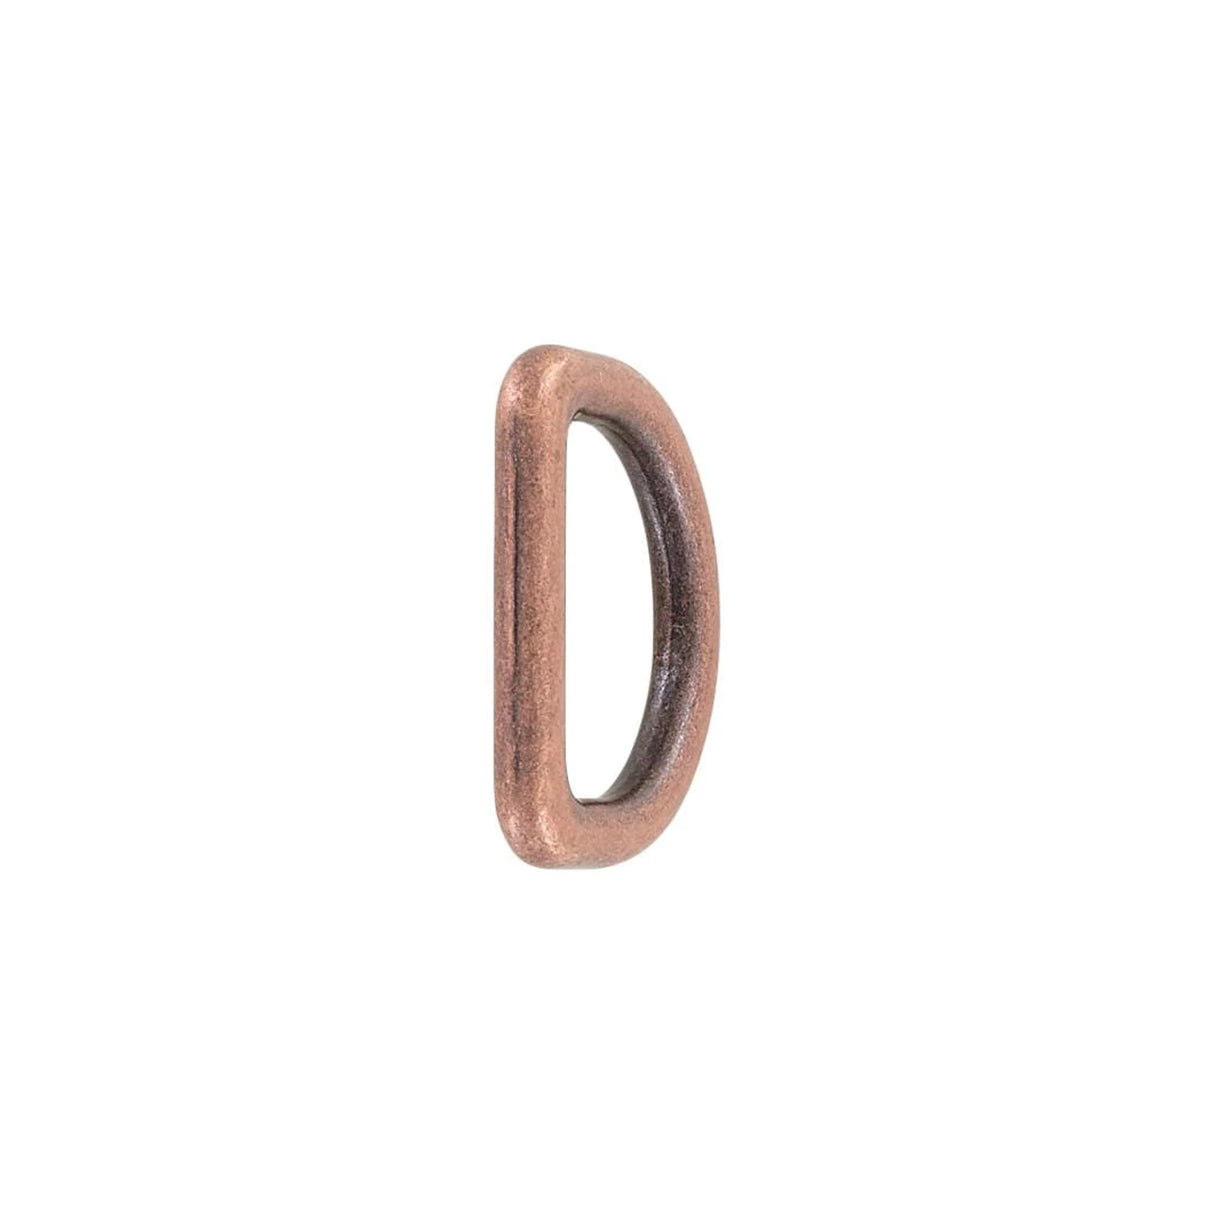 1" Antique Copper, Cast D-Ring, Zinc Alloy, #D-402-ANTC